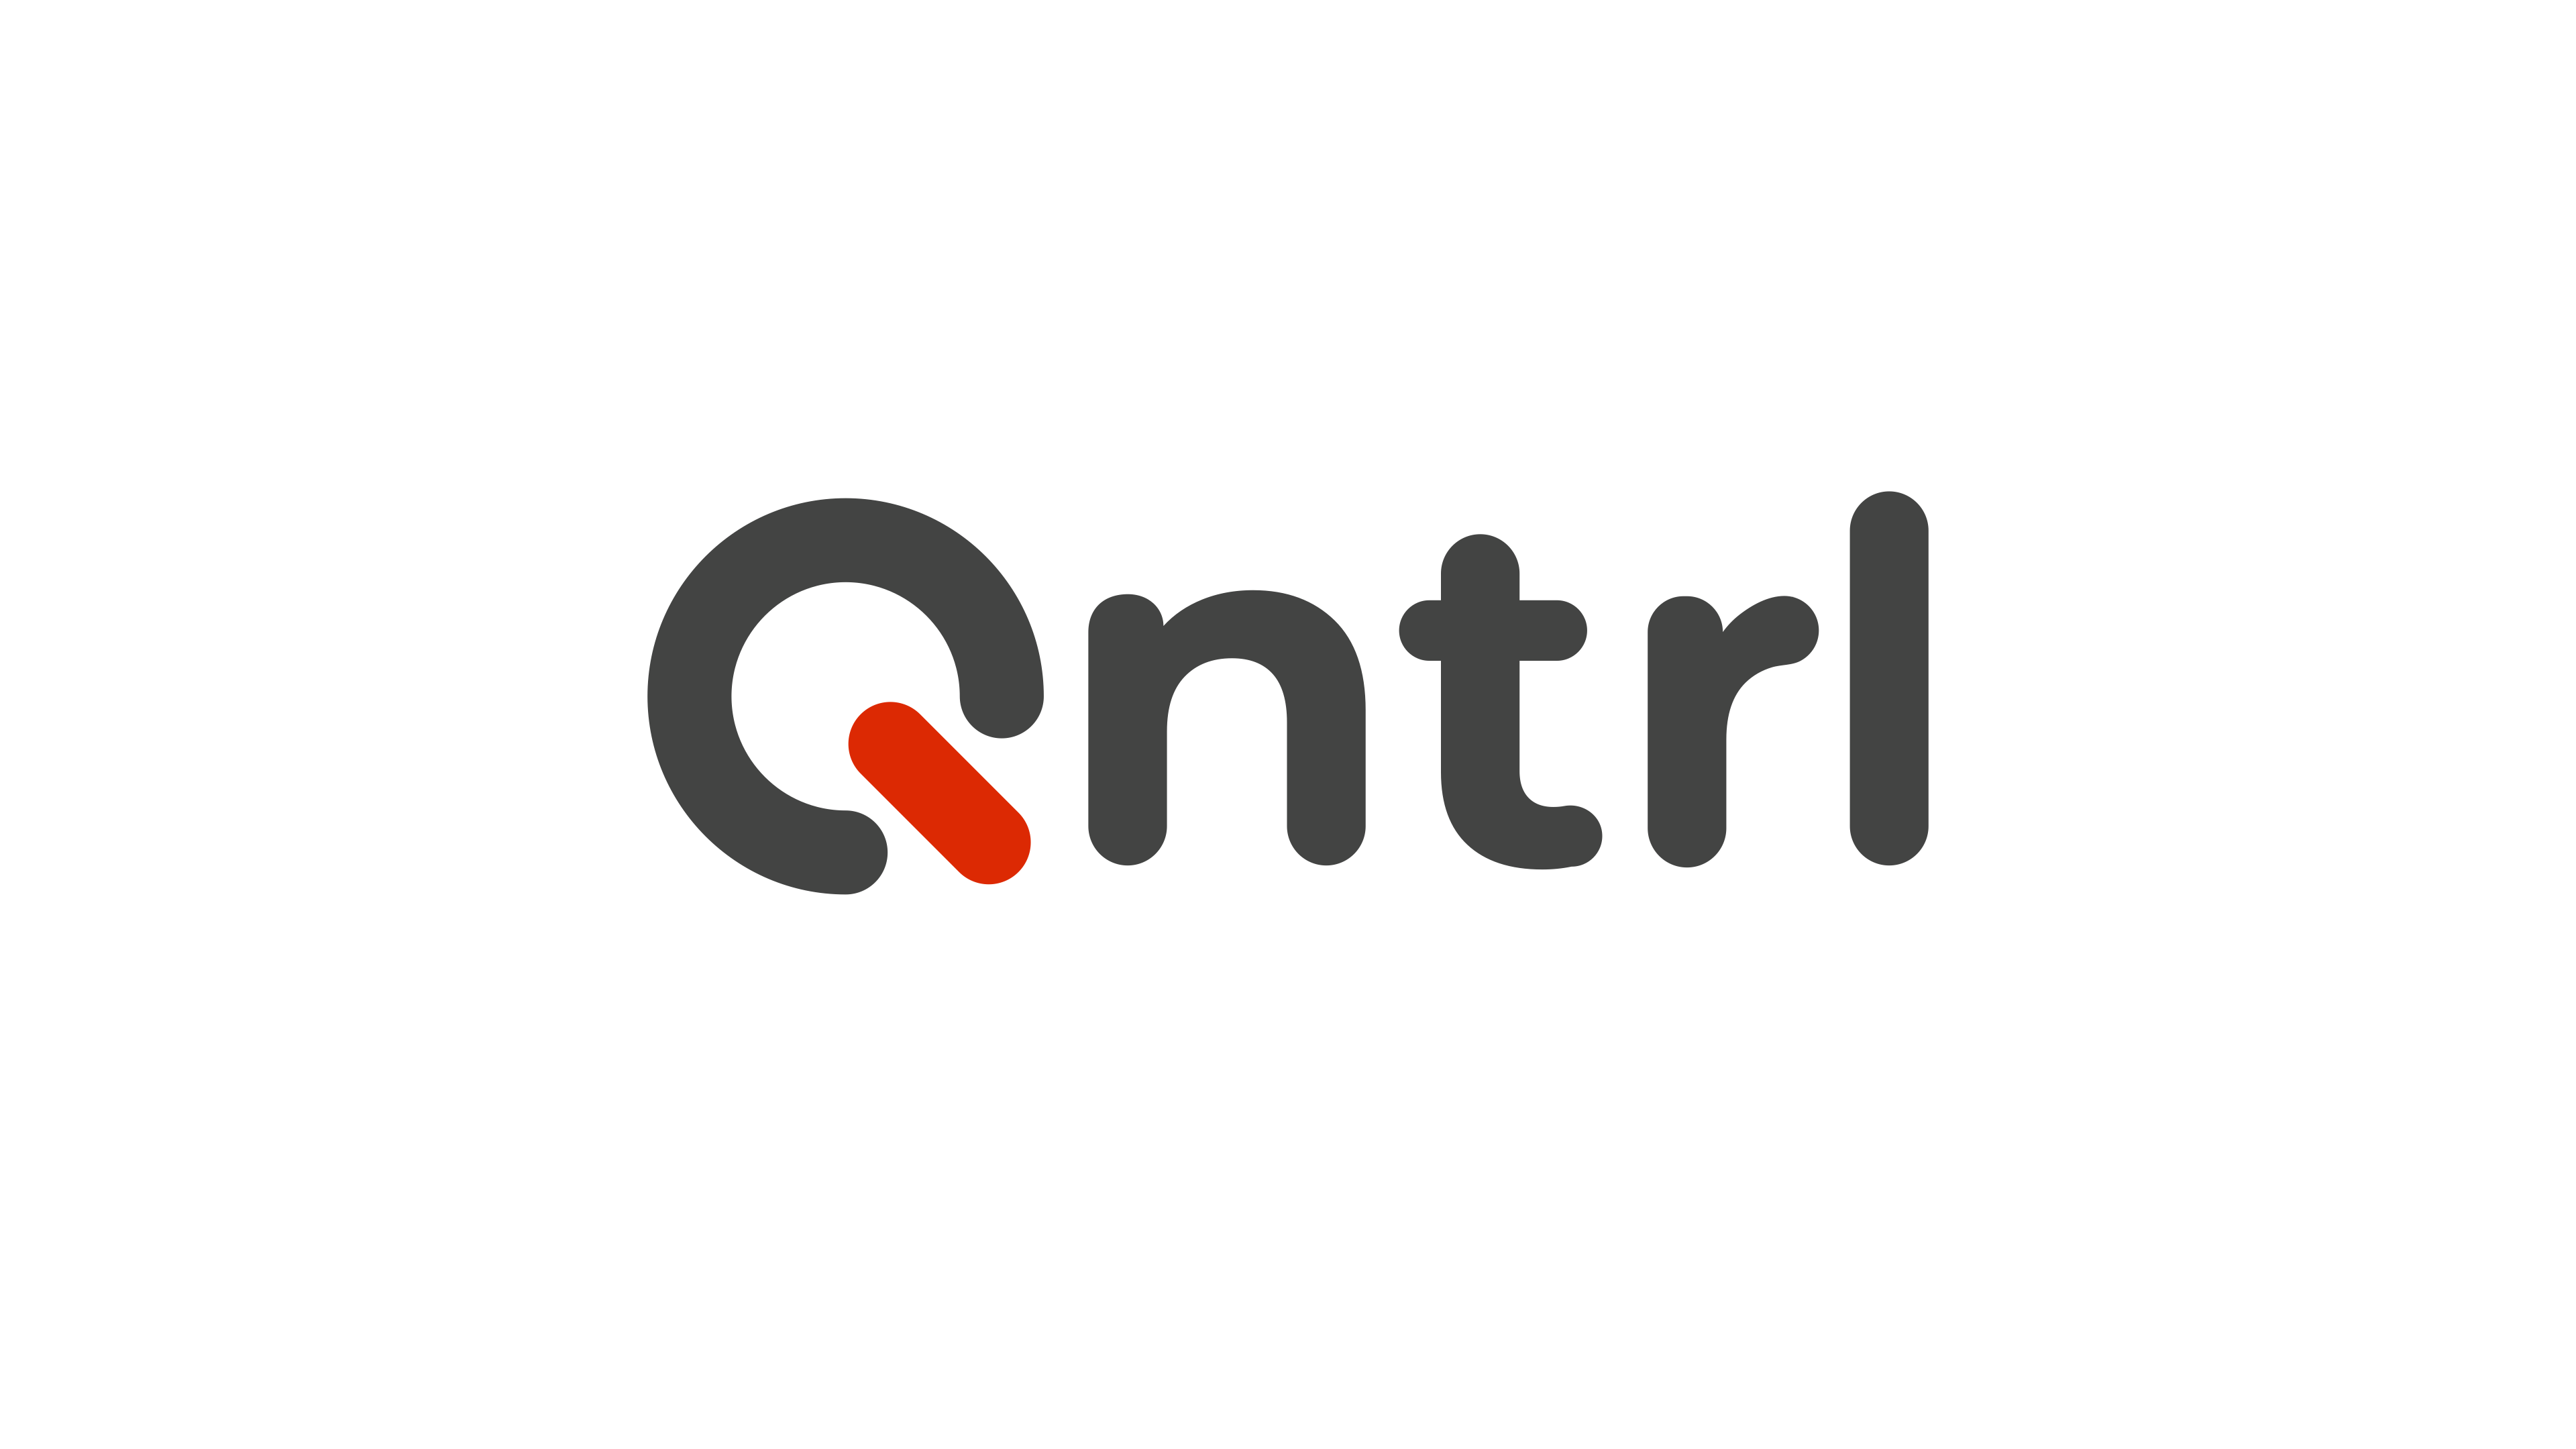 QNTRL là một công cụ mạnh mẽ được Zoho Corporation phát triển nhằm tối ưu hóa hiển thị, kiểm soát và tự động hóa các quy trình trong tổ chức.